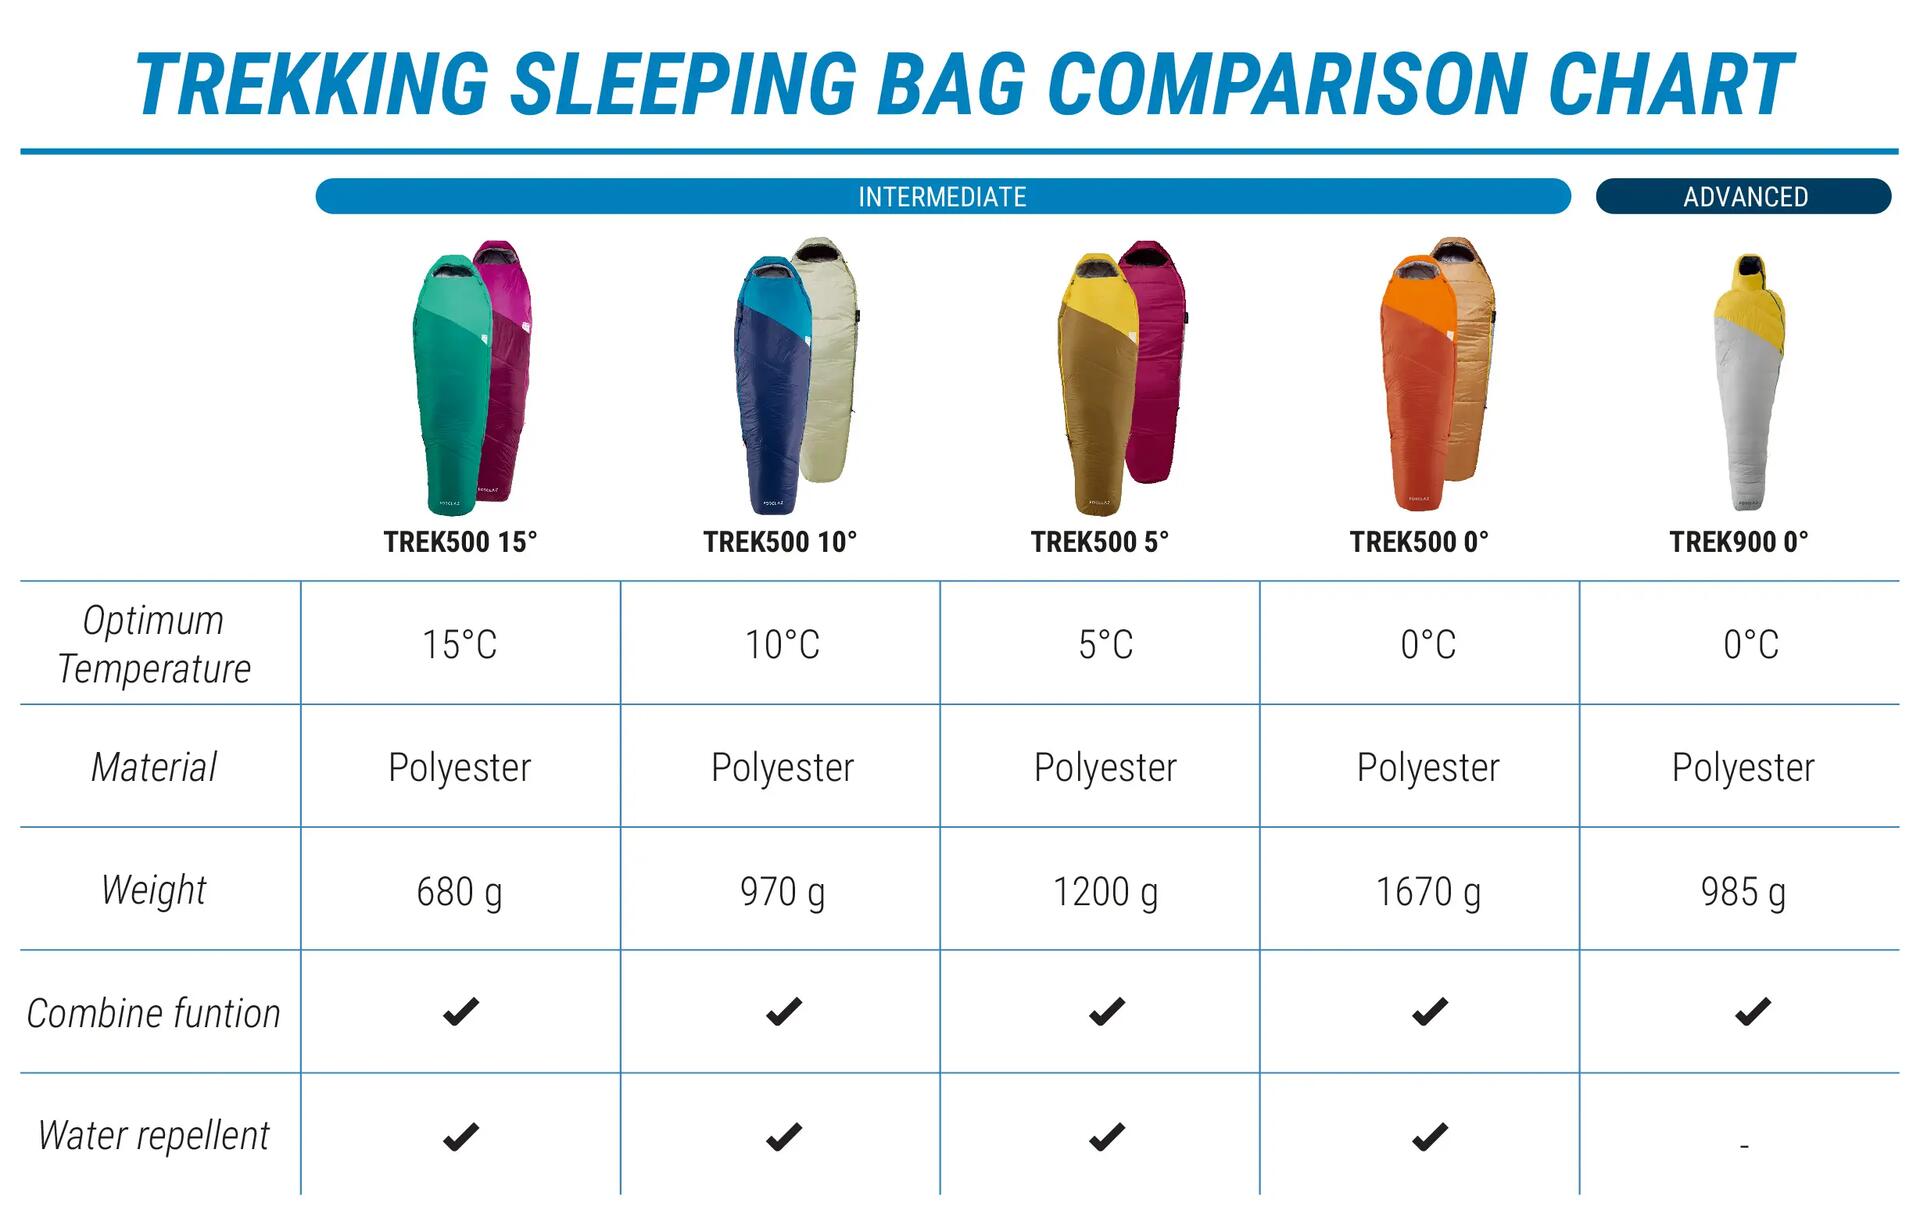 A chart showing trekking sleeping bag comparison chart